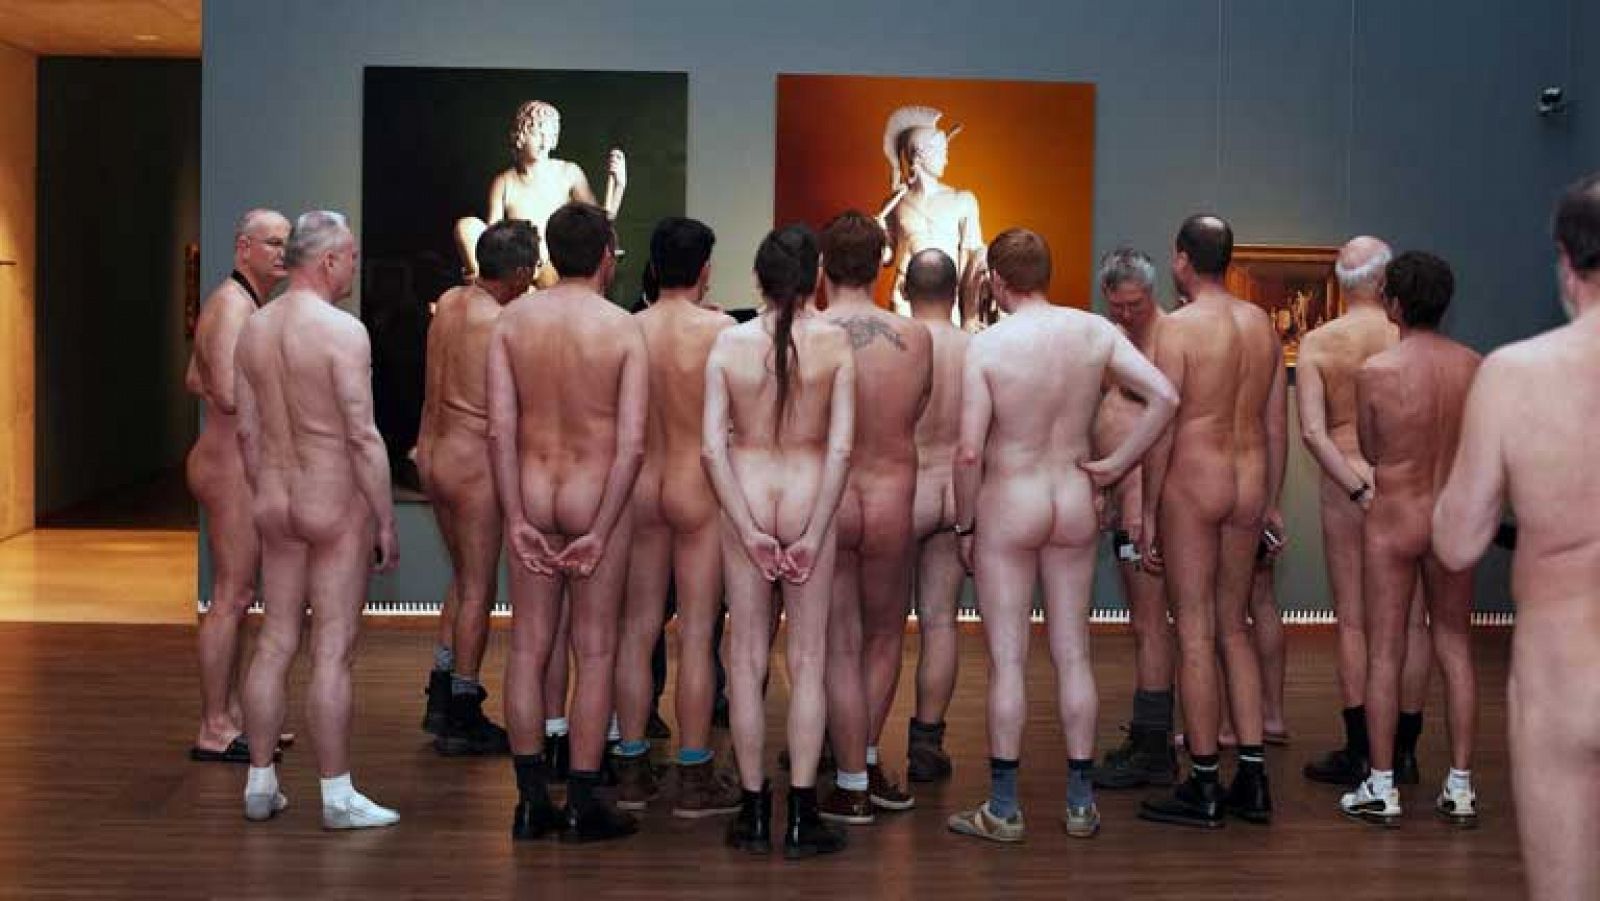 Viena realiza un pase a una exposición solo para nudistas